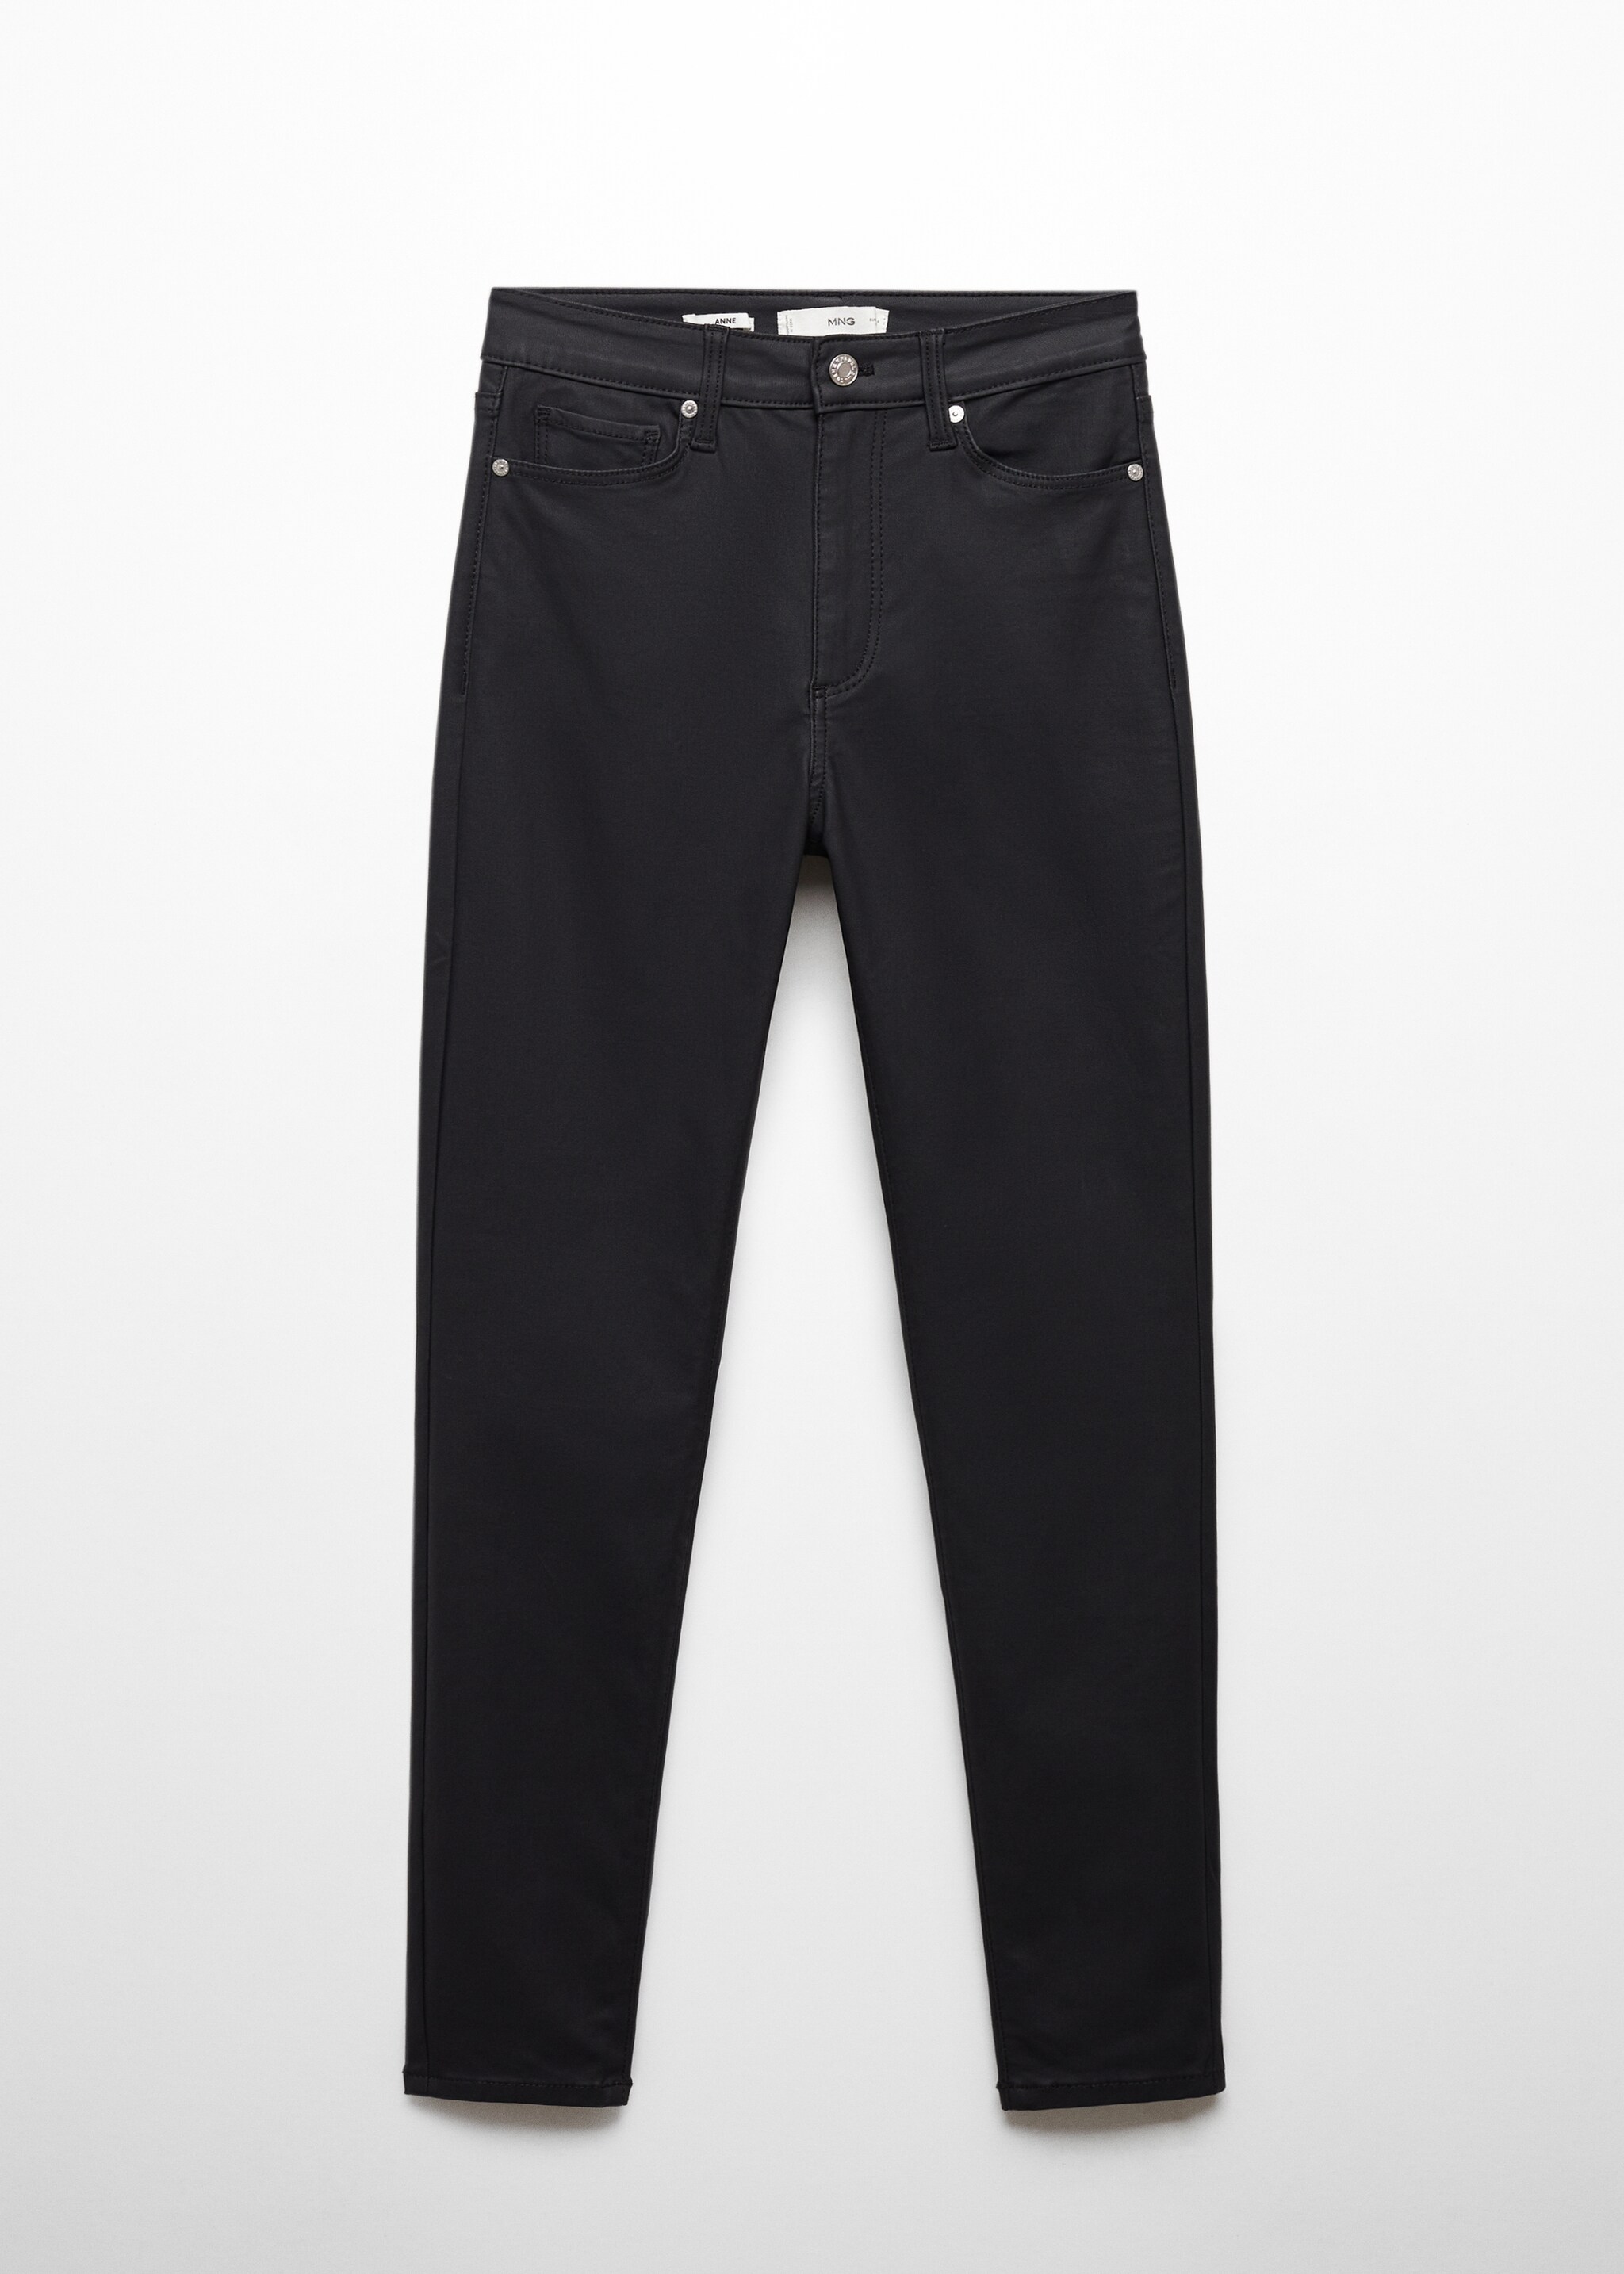 Вощеные джинсы-скинни с высокой талией - Изделие без модели